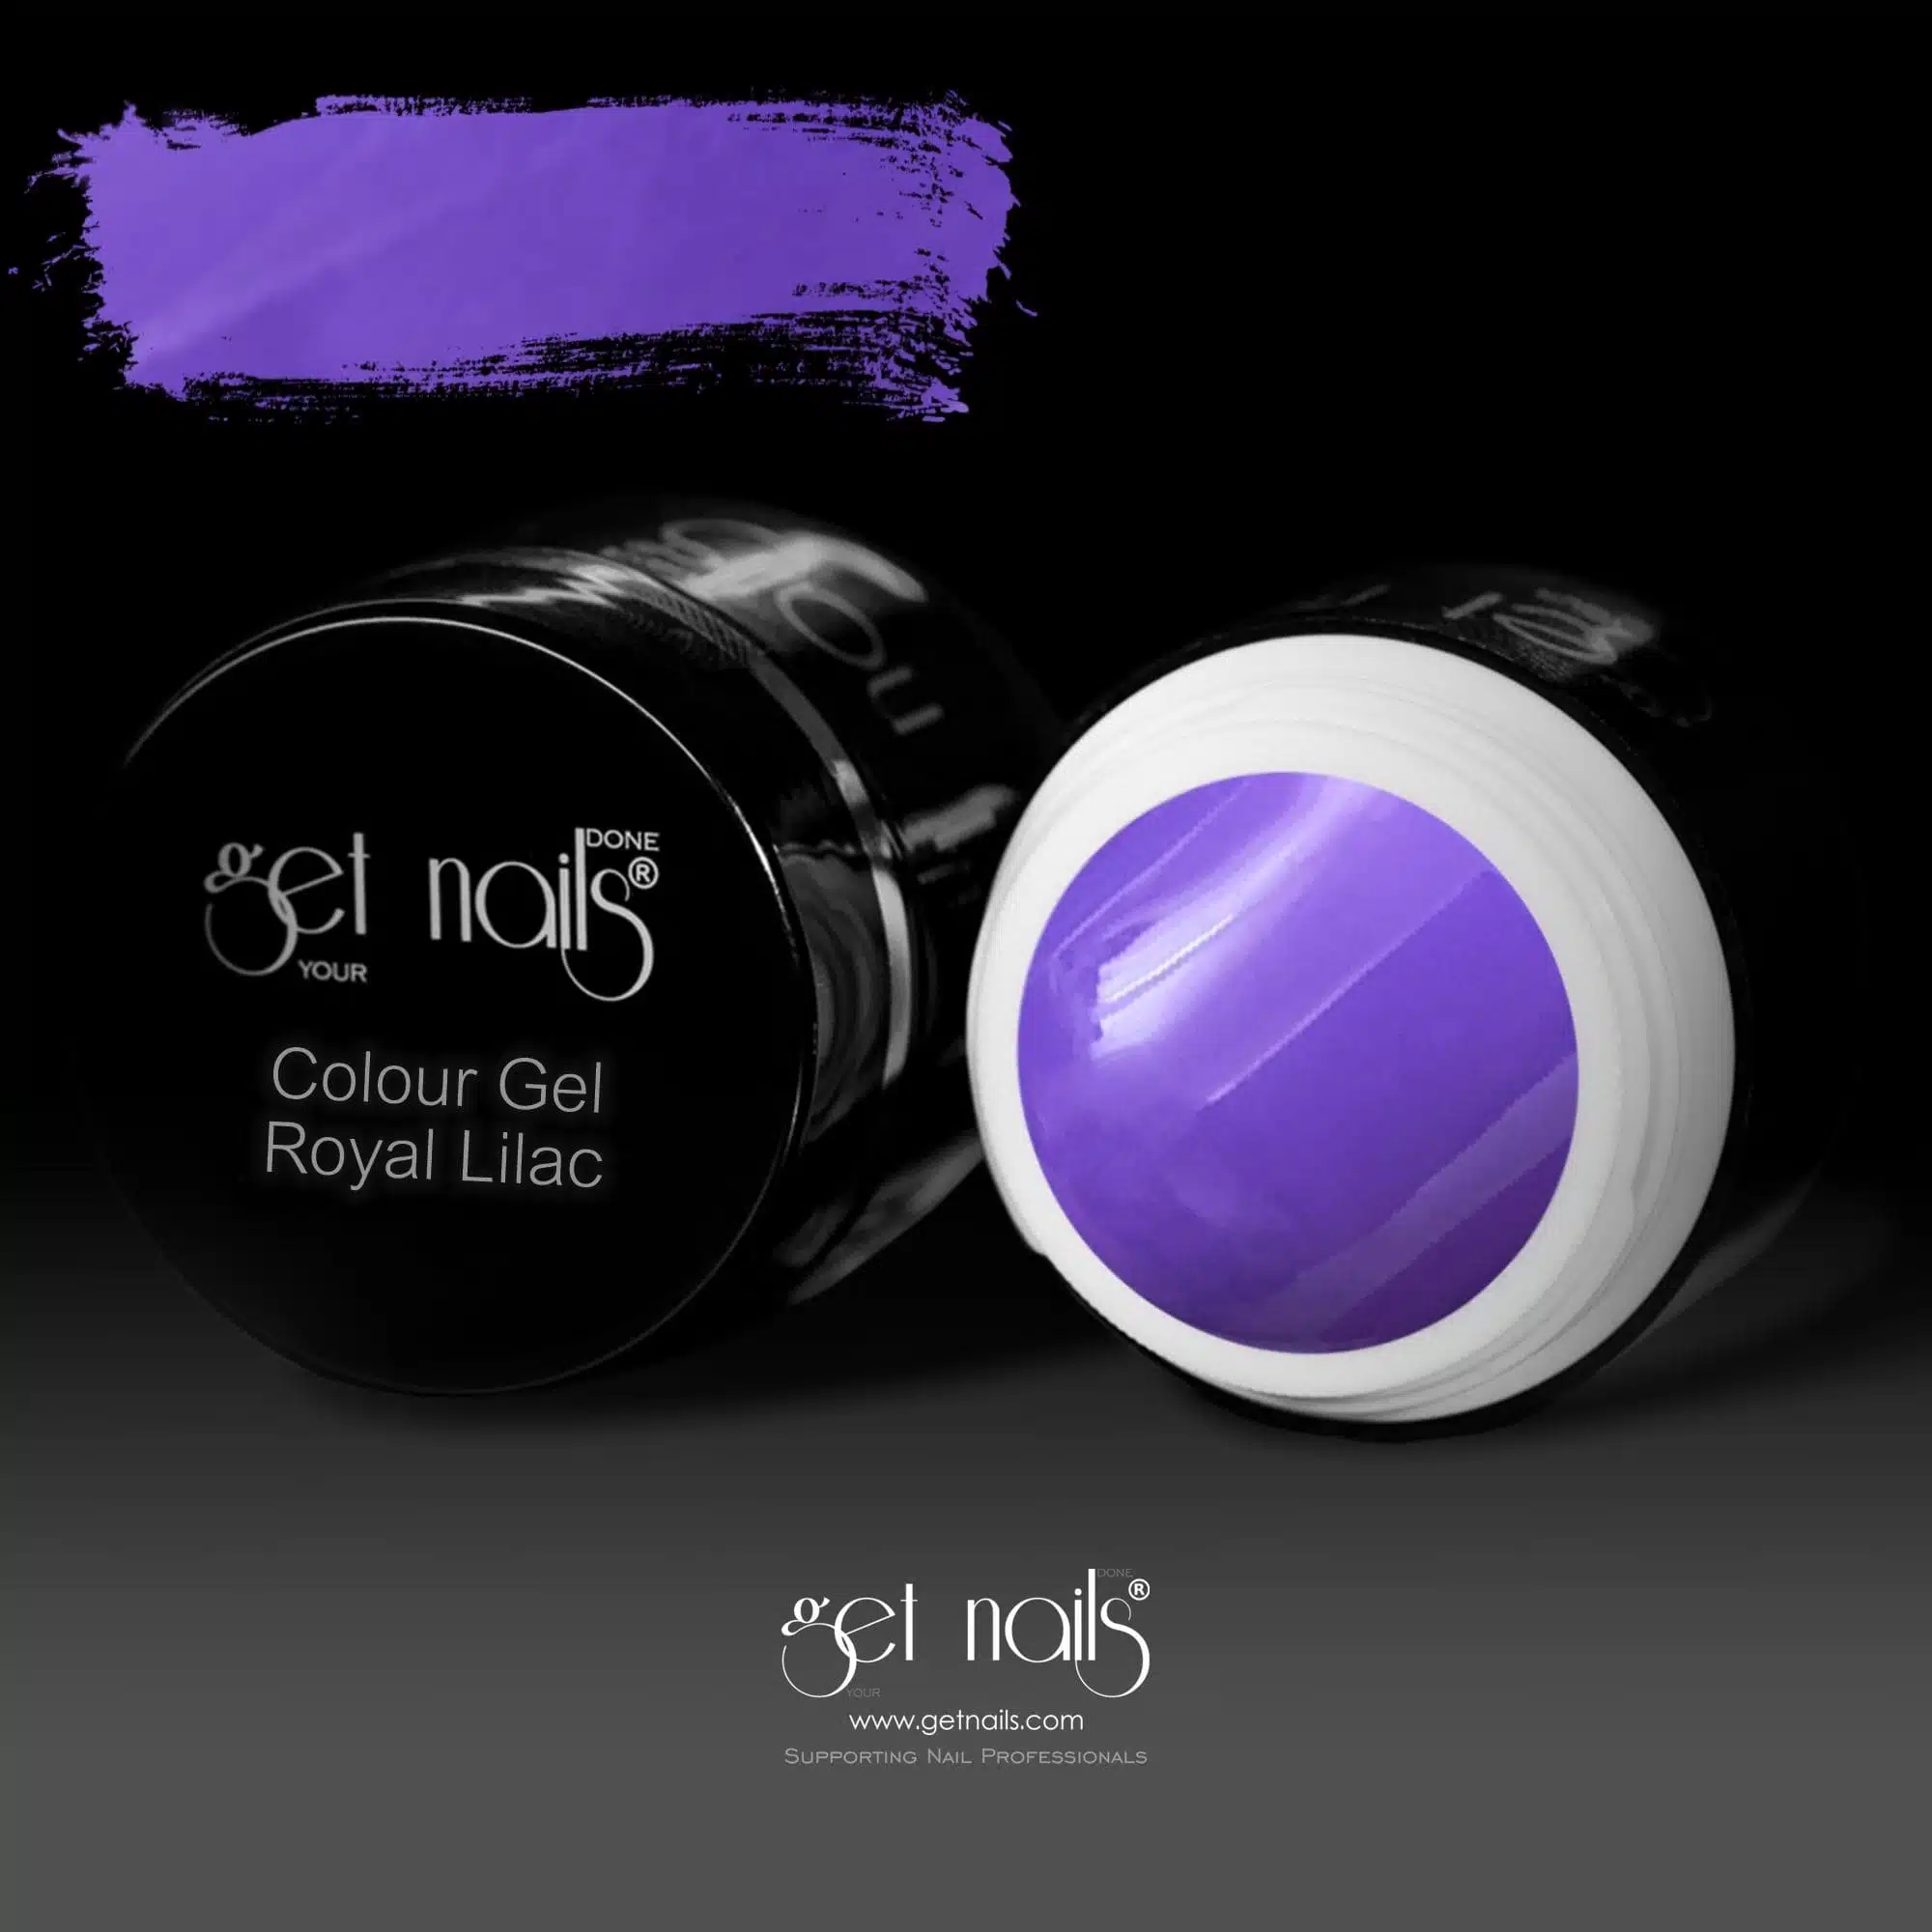 Get Nails Austria - Colour Gel Royal Lilac 5g